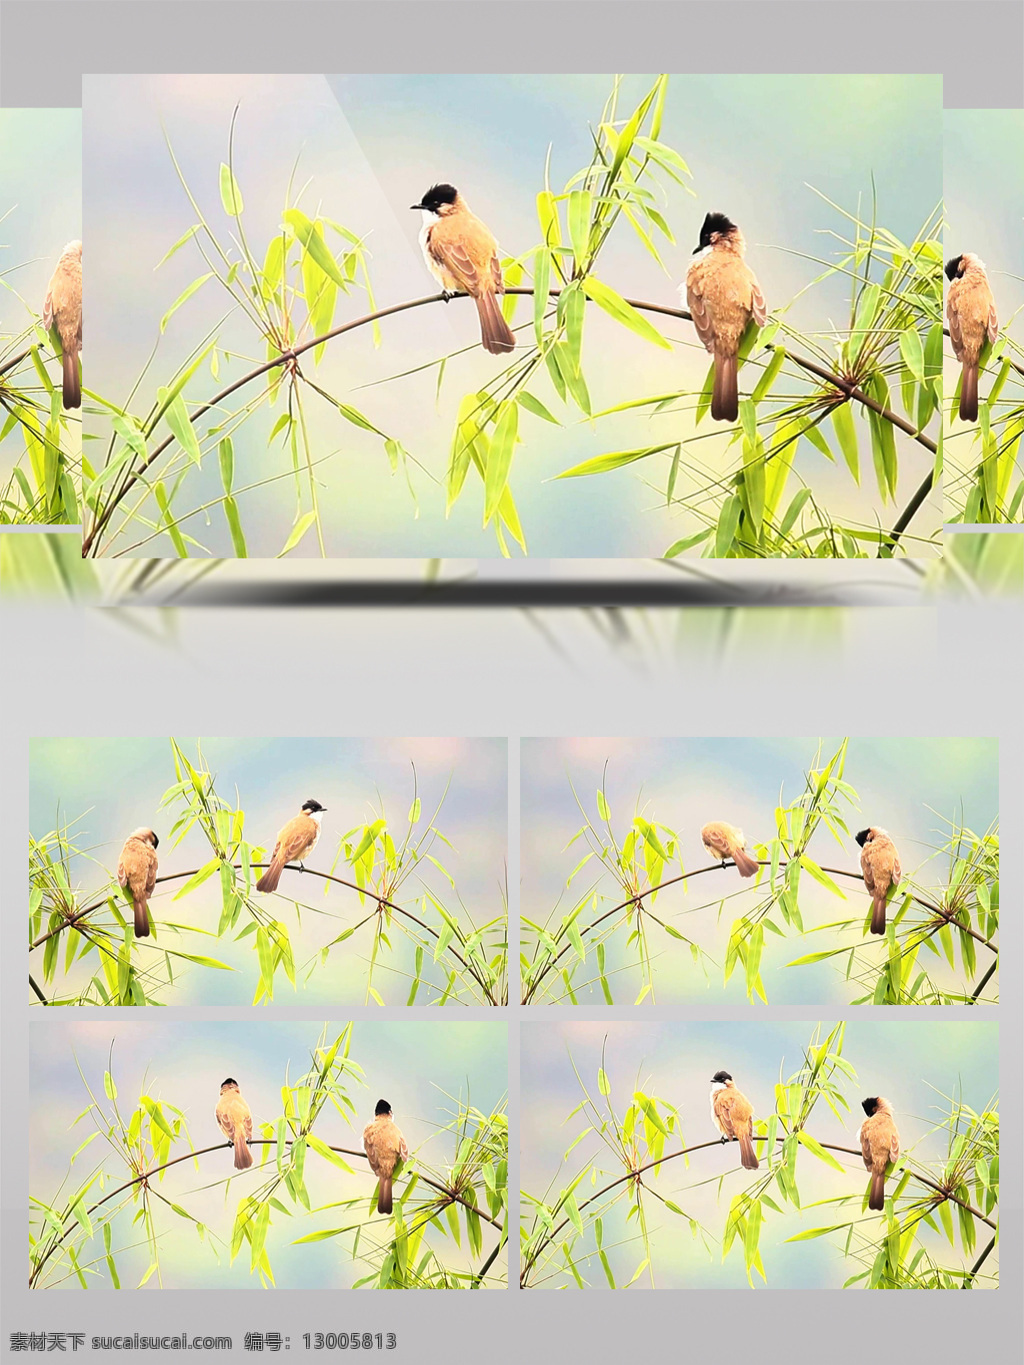 竹枝 上 一对 漂亮 黄 殿 鹎 动物 竹子 春天 绿色 超清 小鸟 鸟儿 竹叶 季节 春季 生态 自然 视频 实拍